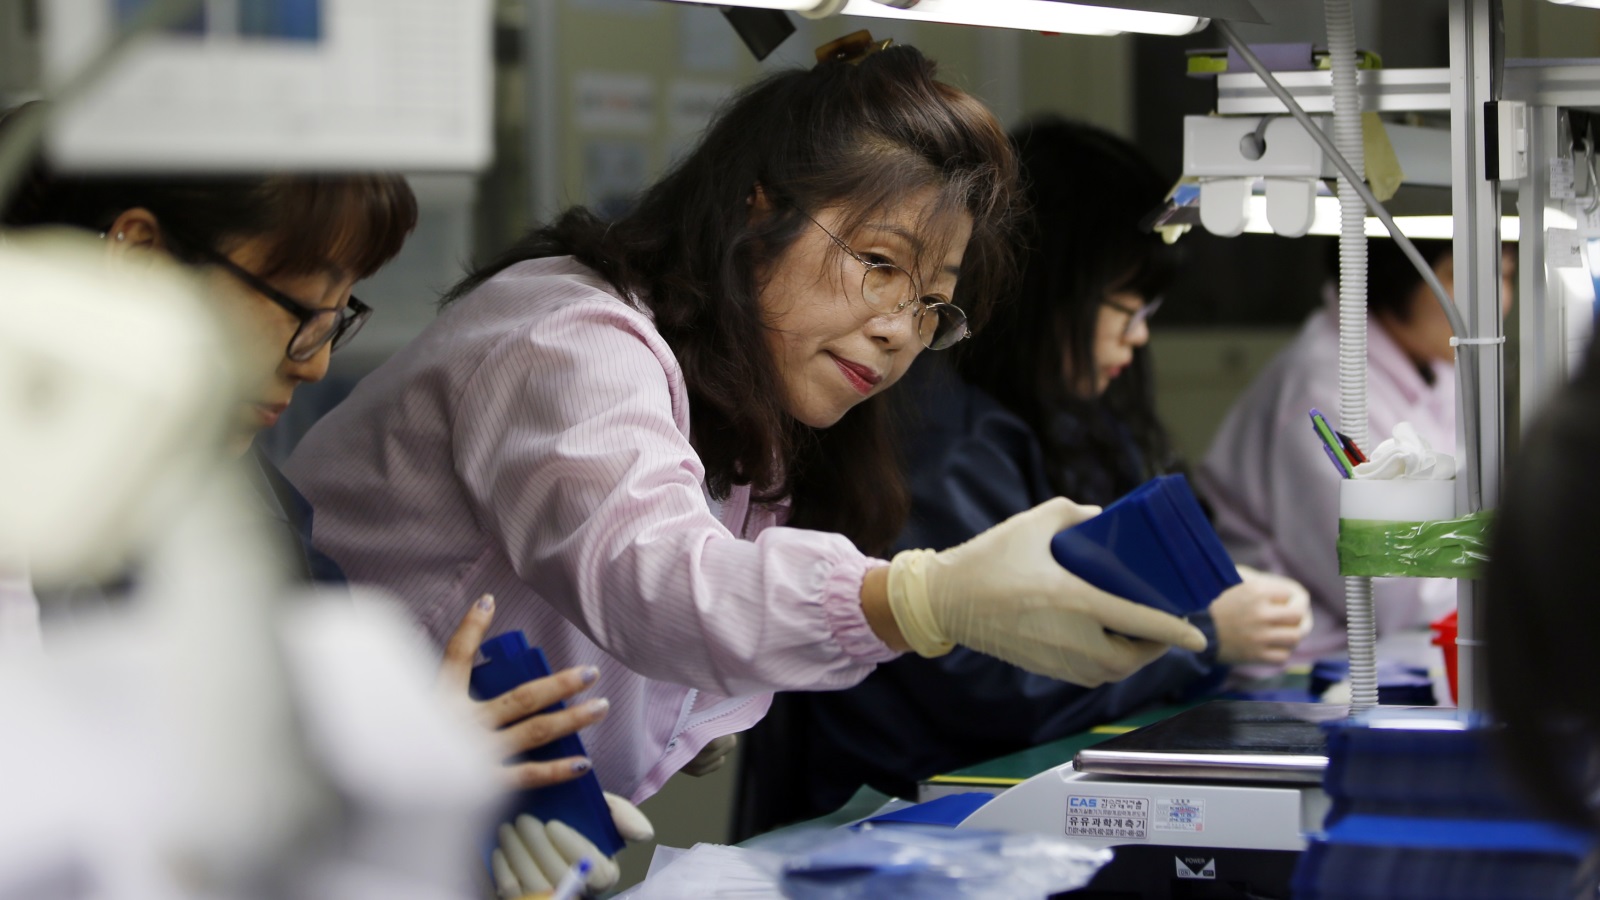 ما الذي يعيق النساء اليابانيات من تحقيق المساواة بين الجنسين في أماكن العمل قياسًا على معدلات التوظيف، والمسلك والوظيفي؟